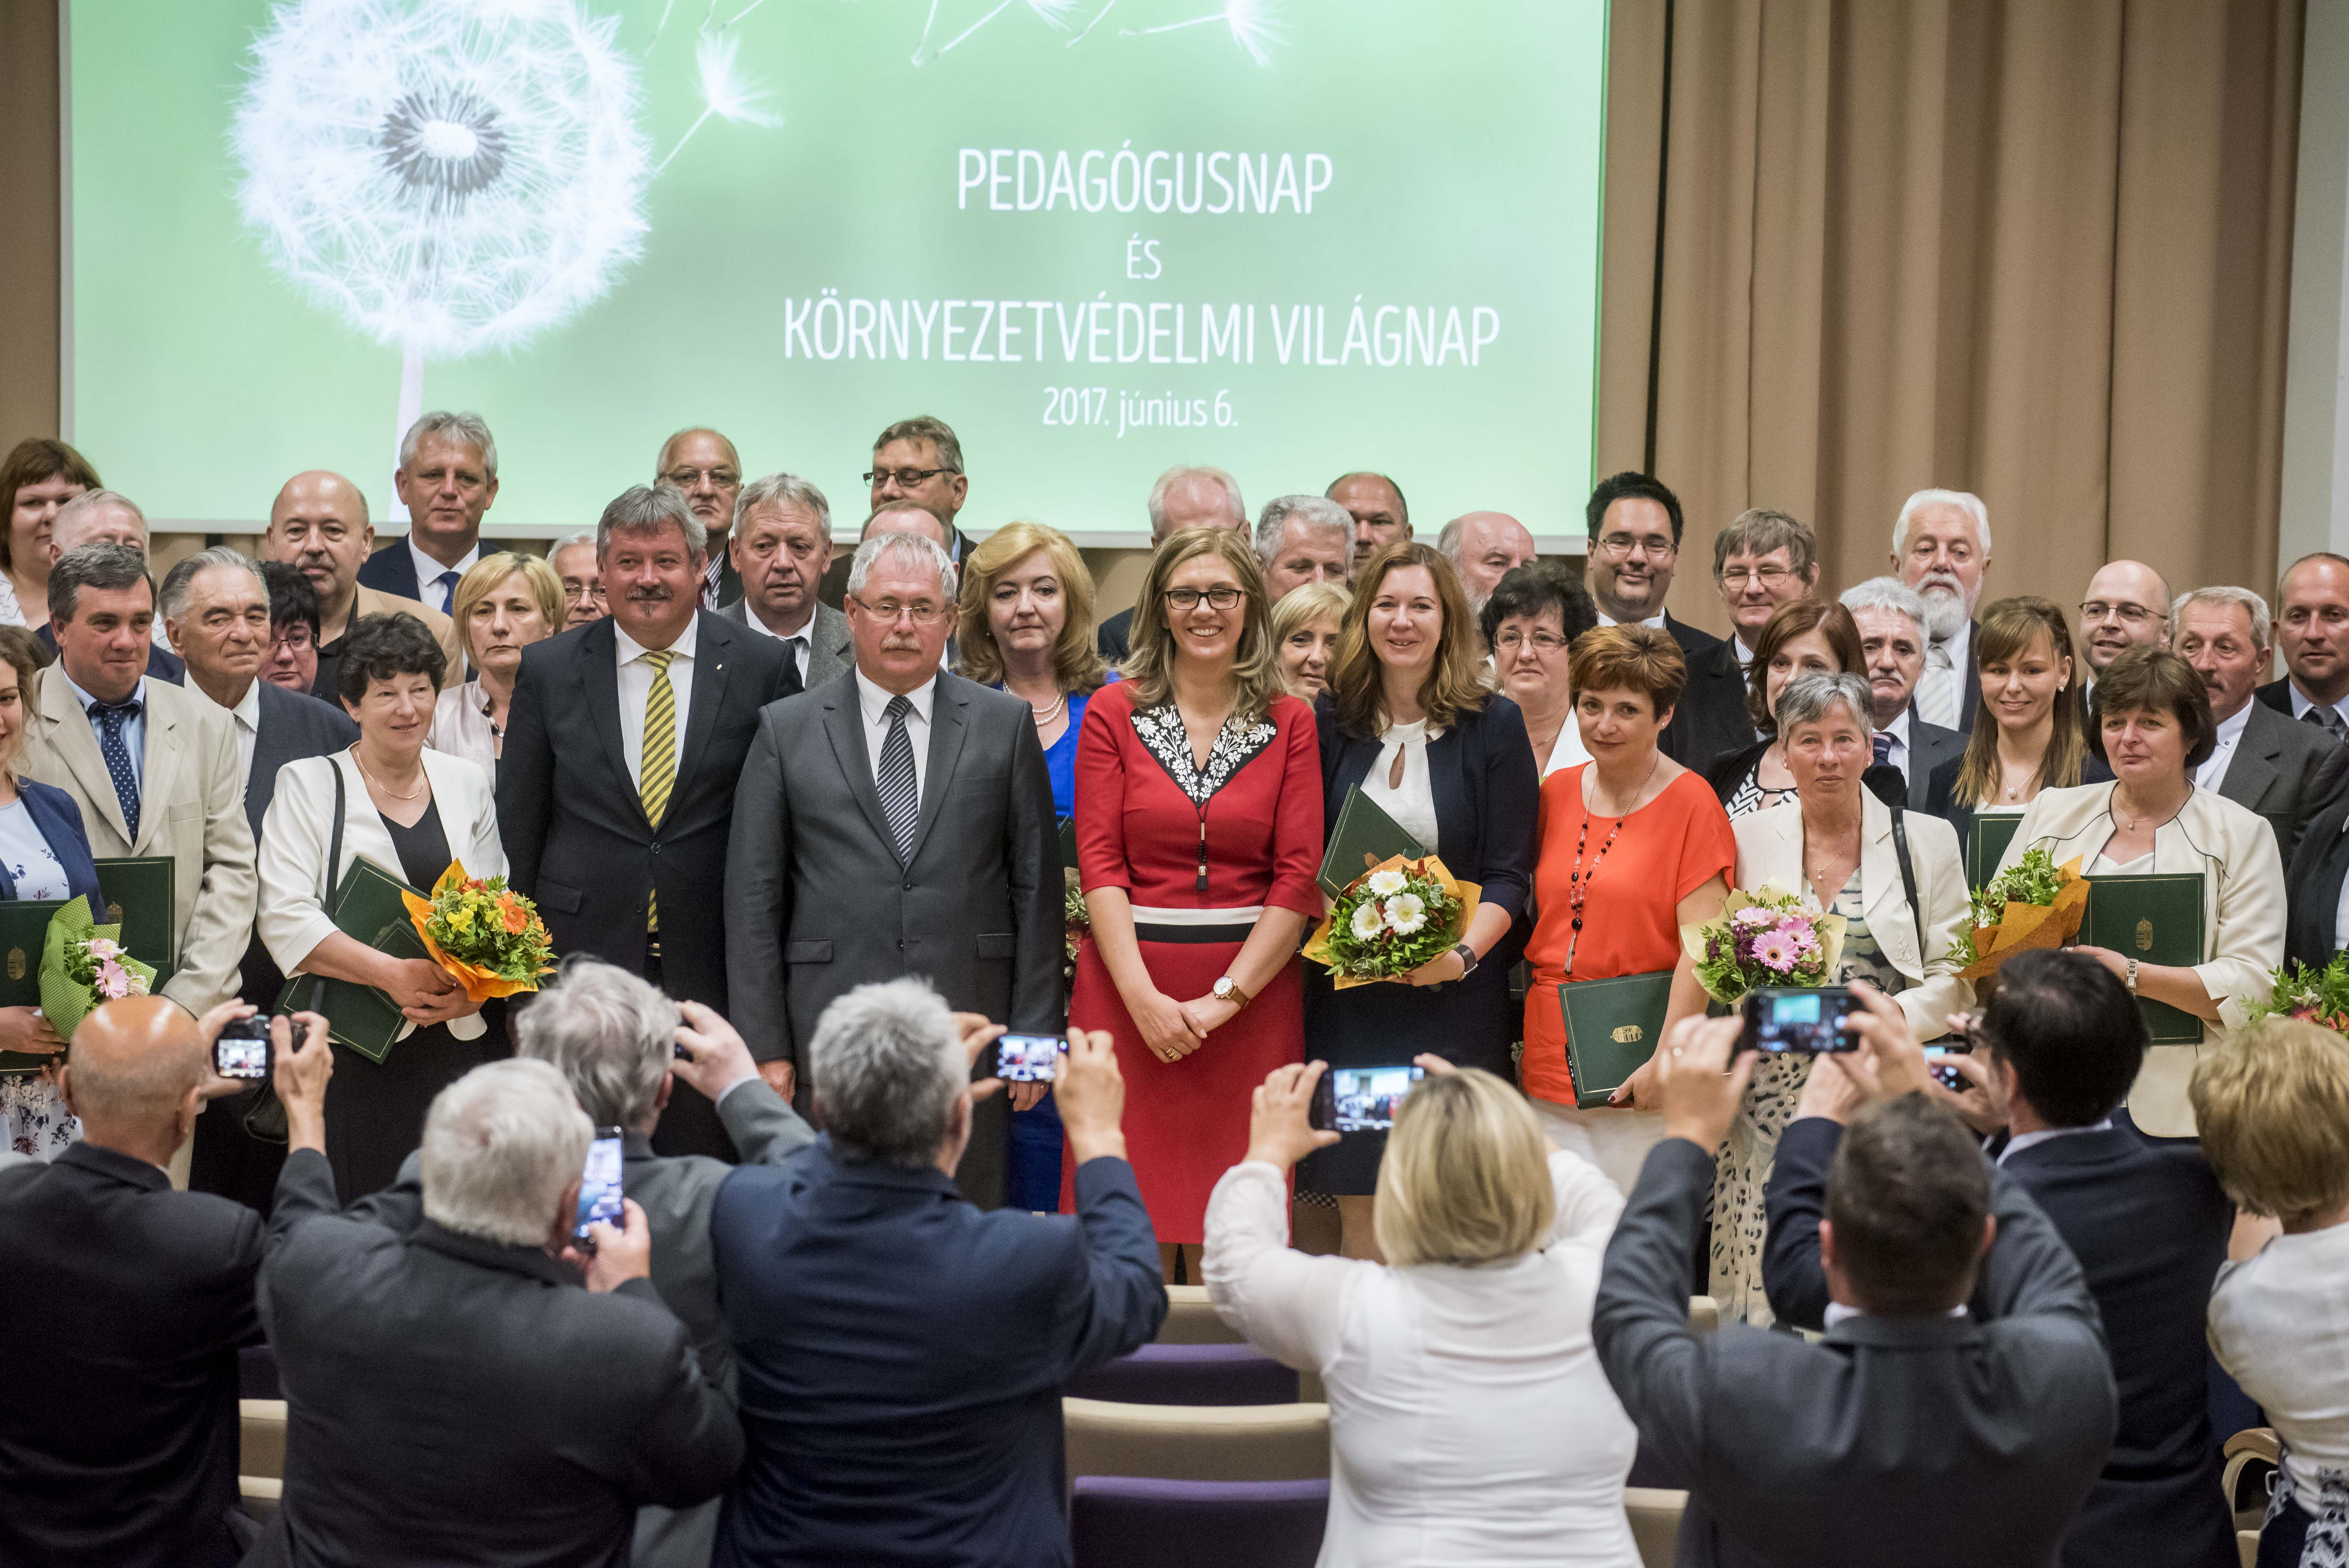 Környezetvédelmi és pedagógusnapi díjakat adott át Fazekas Sándor